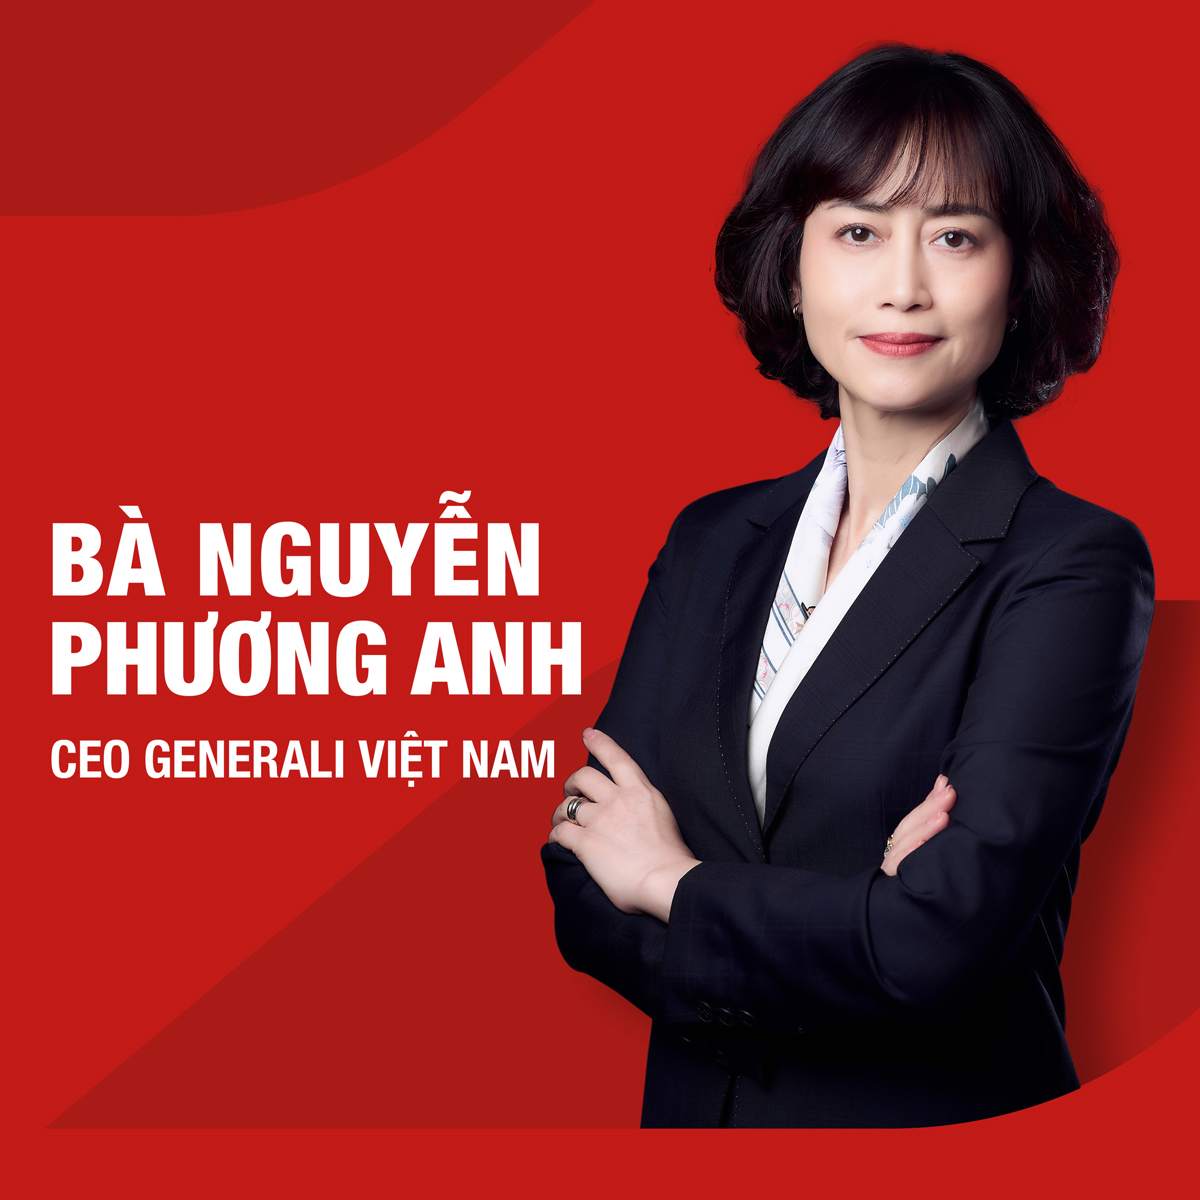 Tp. HCM - 16/10/2023, Công ty TNHH BHNT Generali Việt Nam (“Generali Việt Nam”) chính thức bổ nhiệm Bà Nguyễn Phương Anh vào vị trí Tổng Giám đốc*.